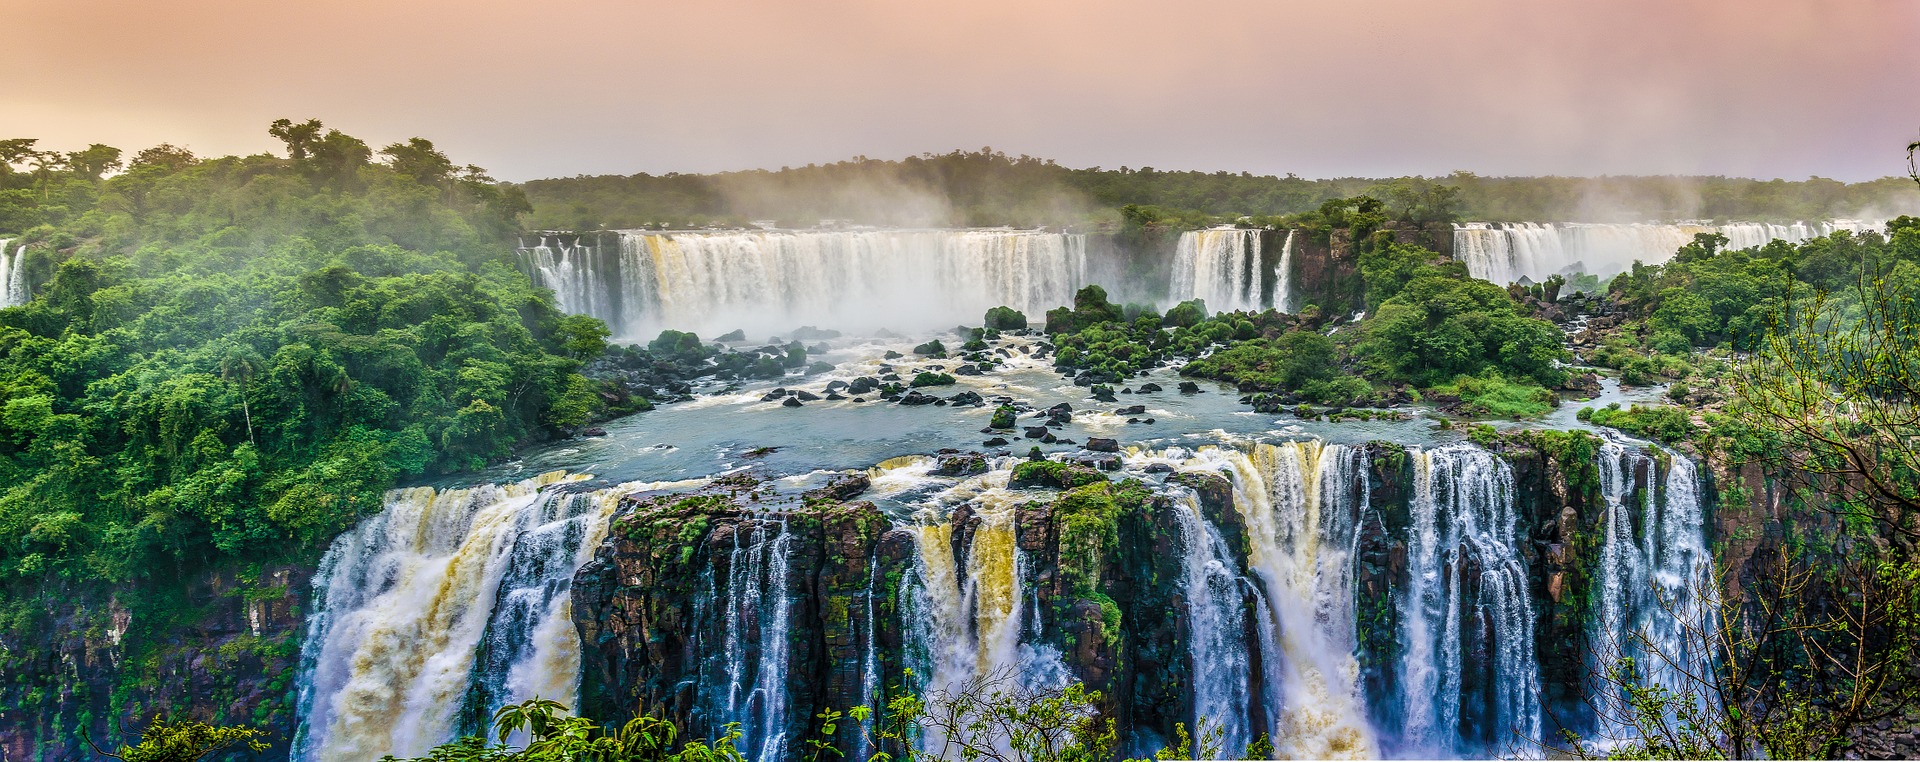 A világ legszebb helyei: Igauzu vízesés, Brazíli